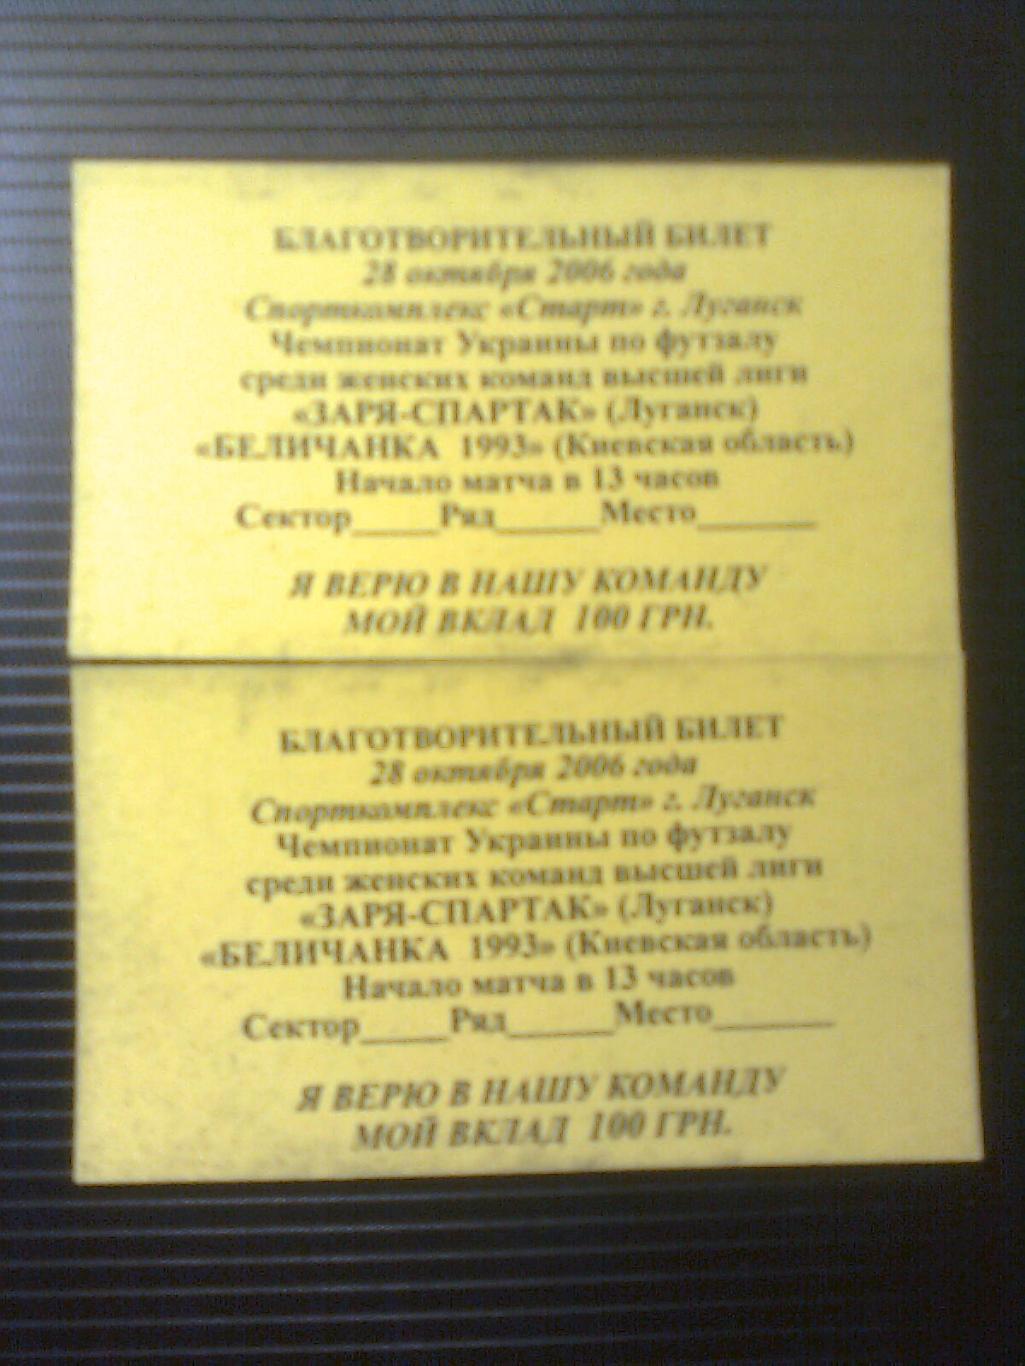 Благотворительный билет 28 октября 2006 год. Футзал. Луганск. 1